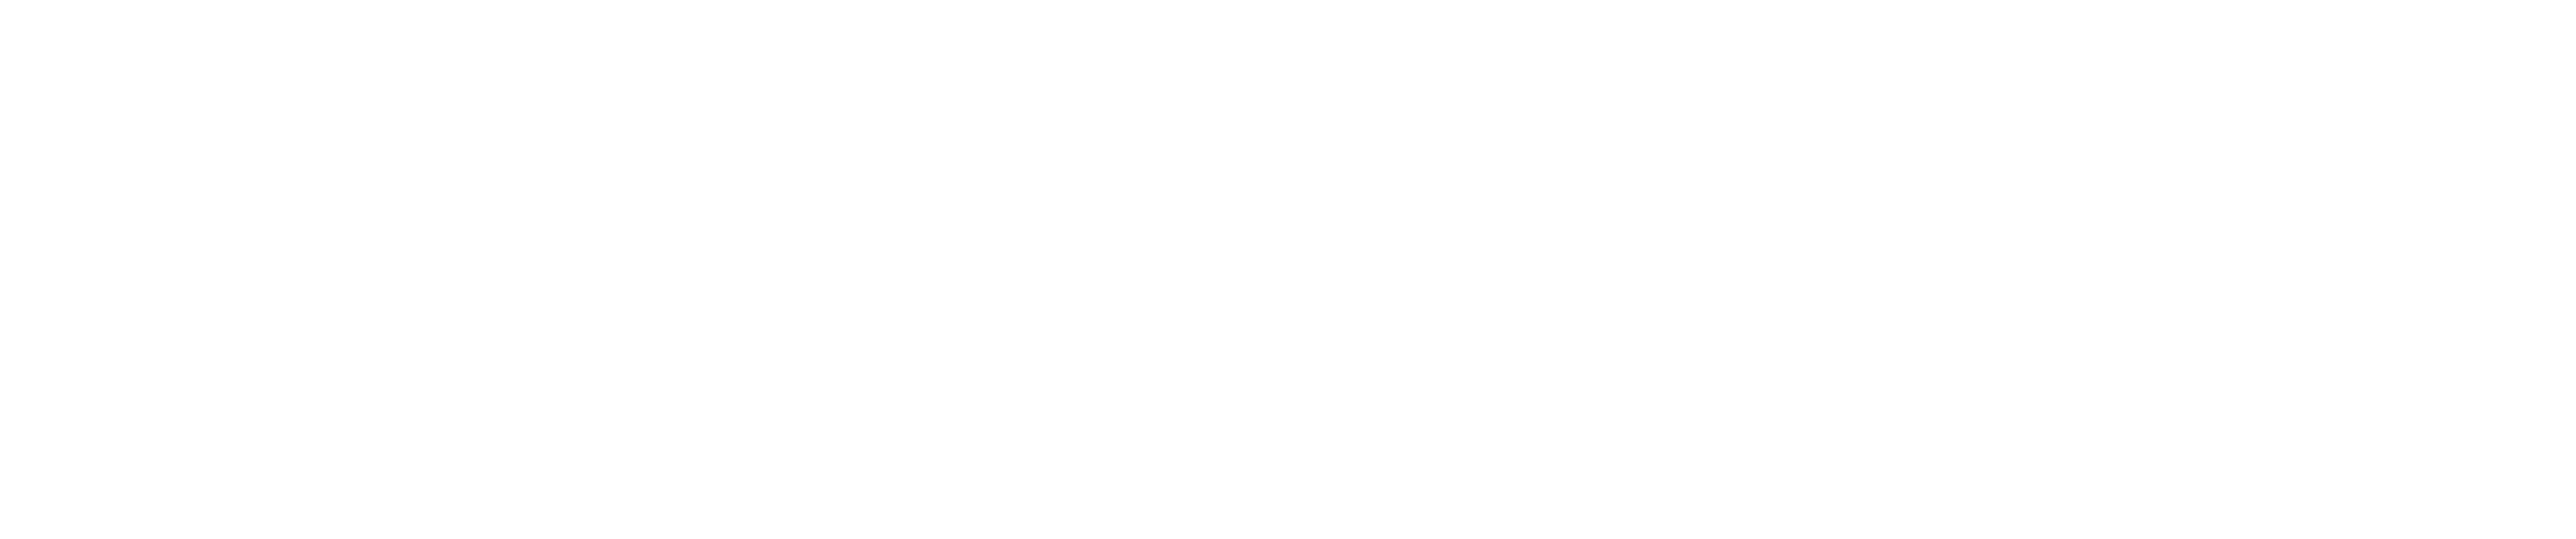 Playtech_logo.png